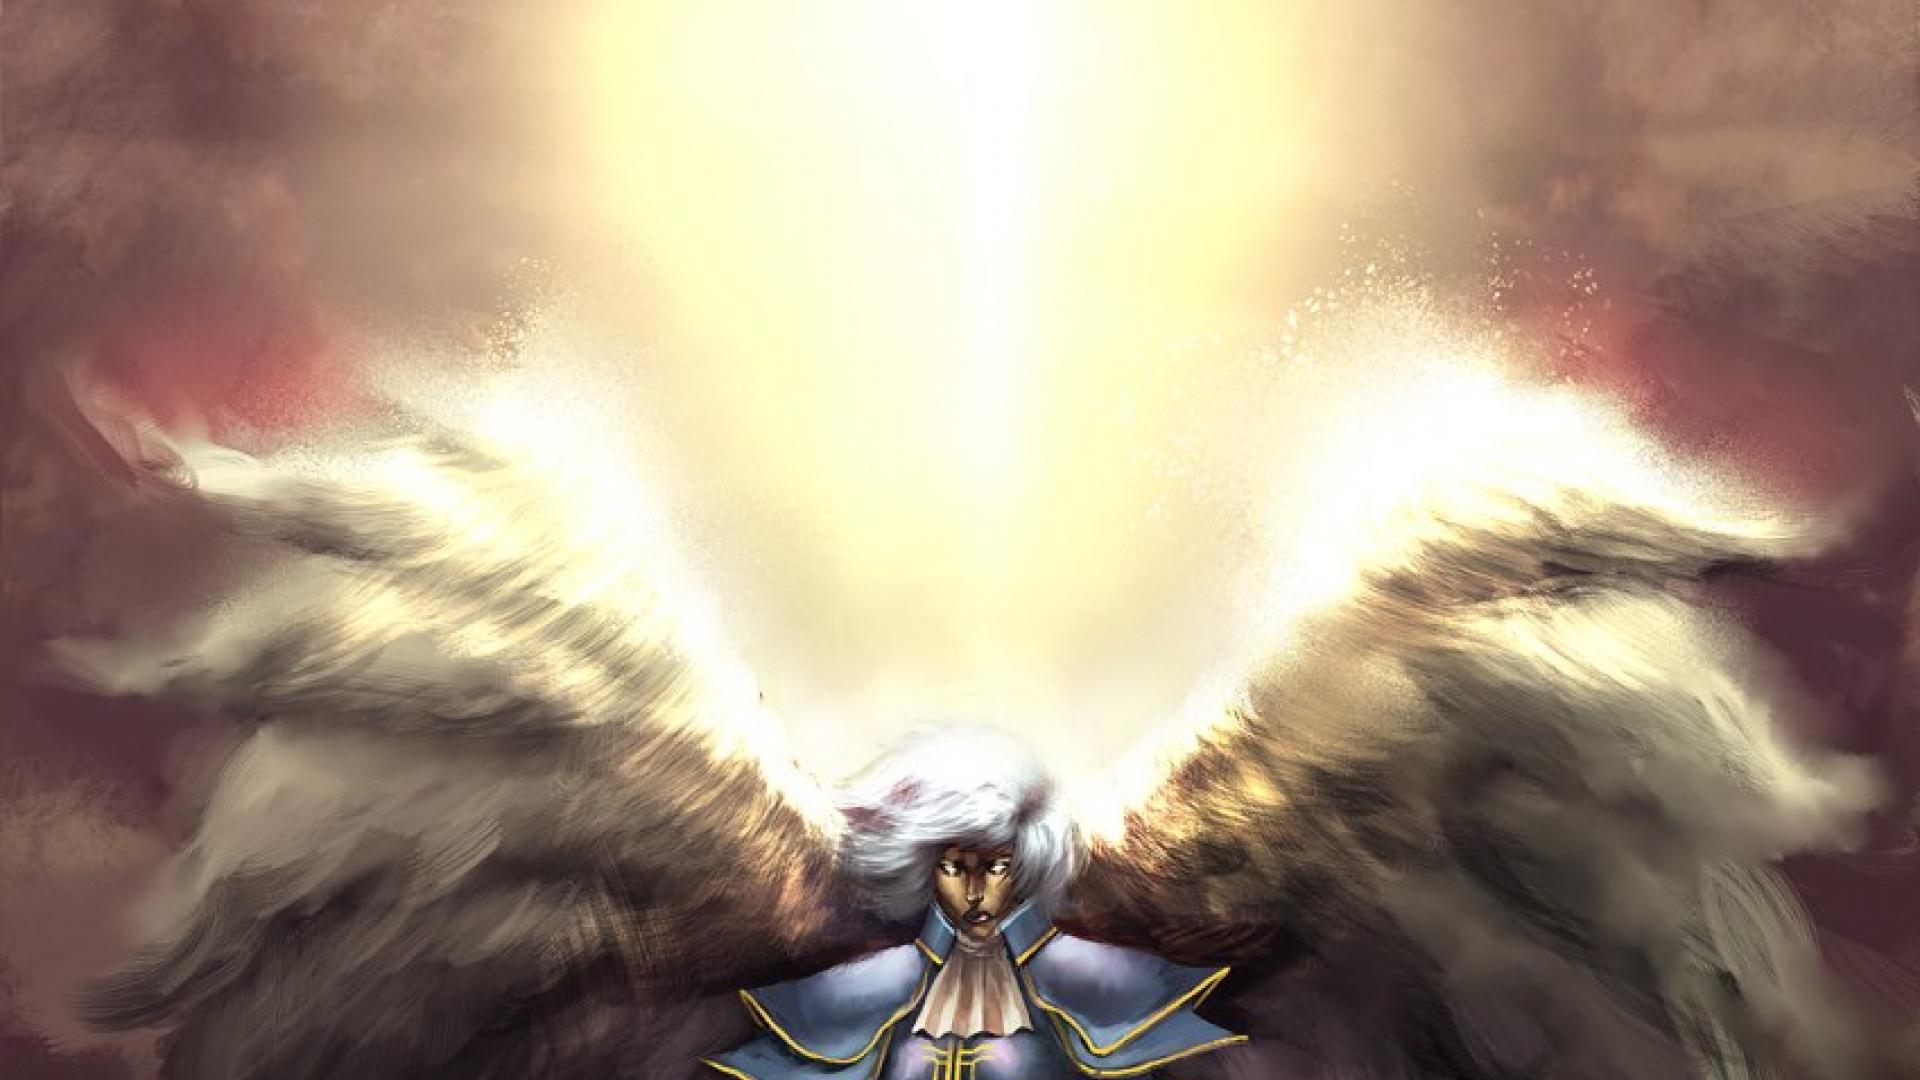 archangel wings armor hd wallpaper - (#3815) - HQ Desktop ...